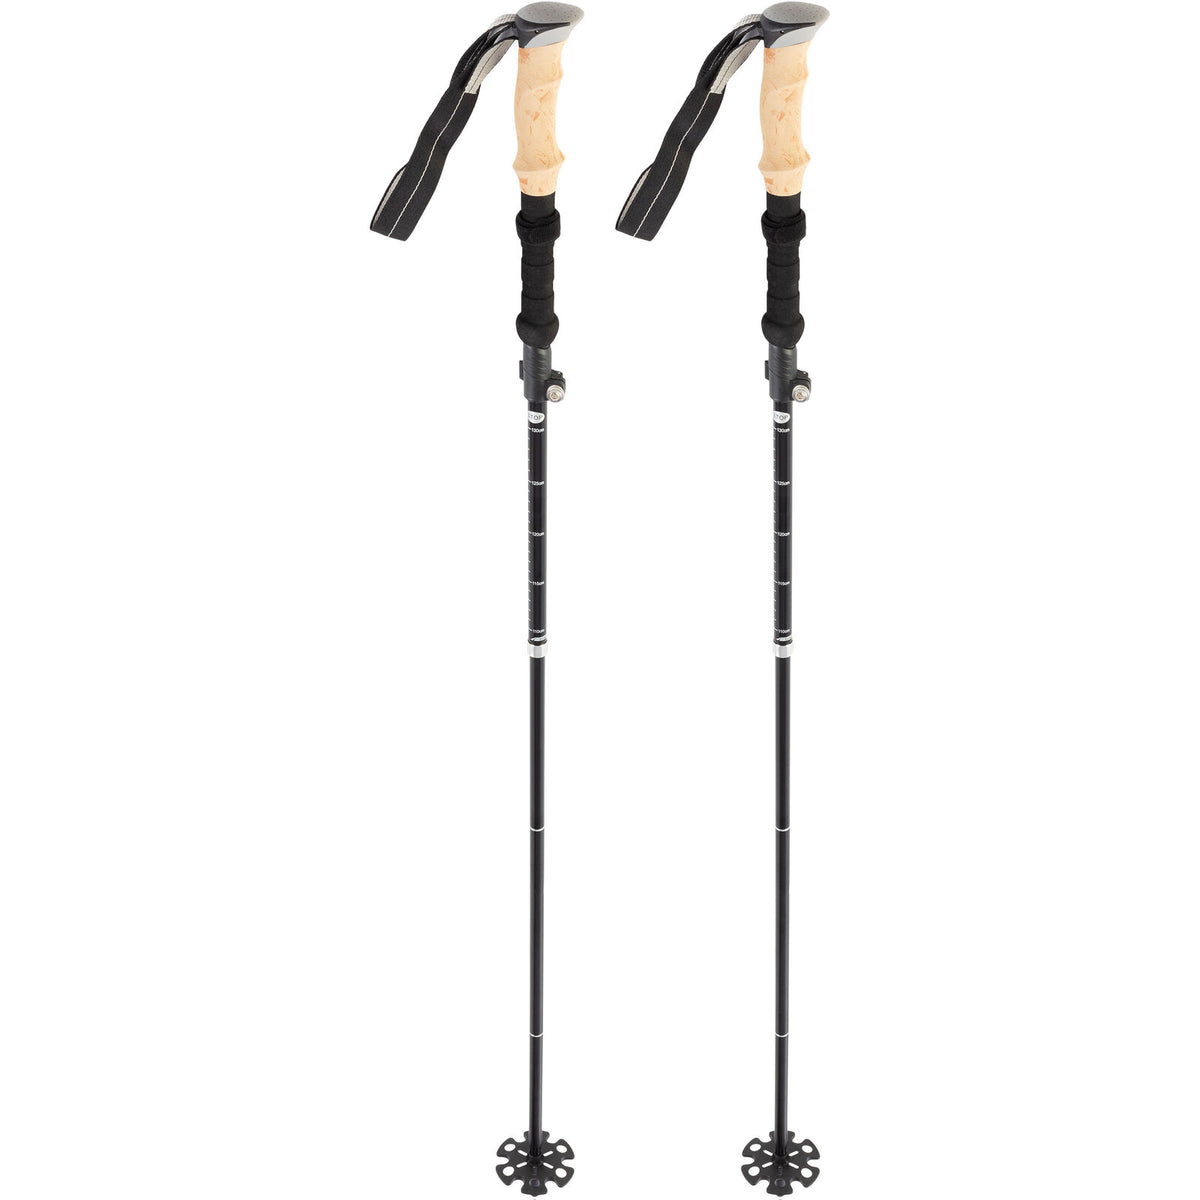 2-Pack Black Collapsible Walking Sticks Trekking Poles for Hiking